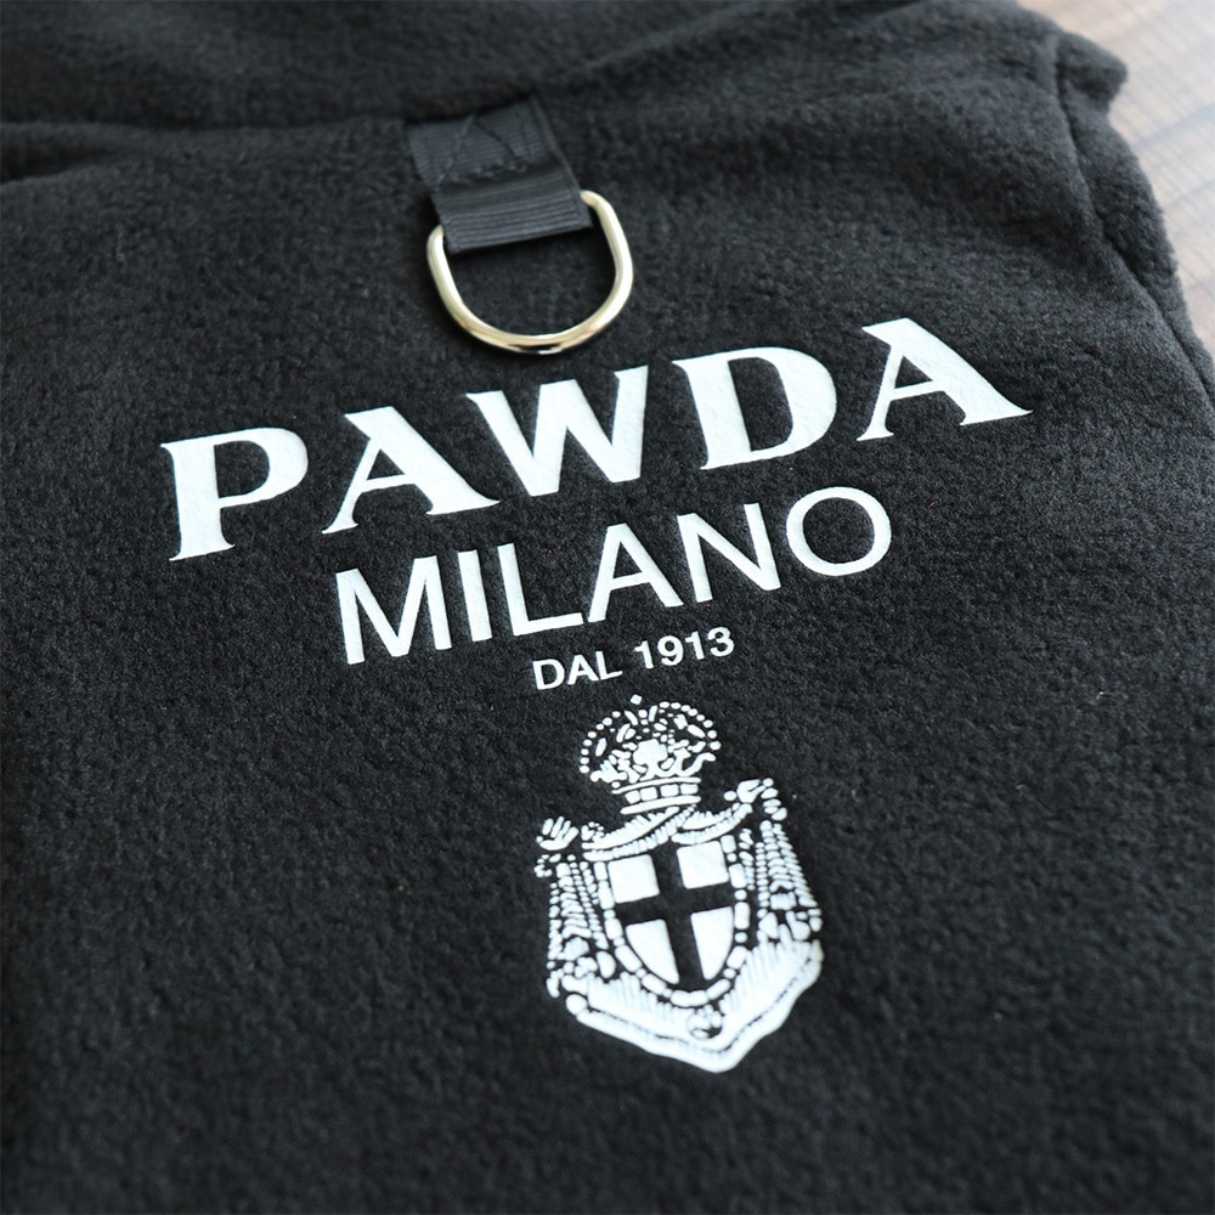 Pawda Dog Vest